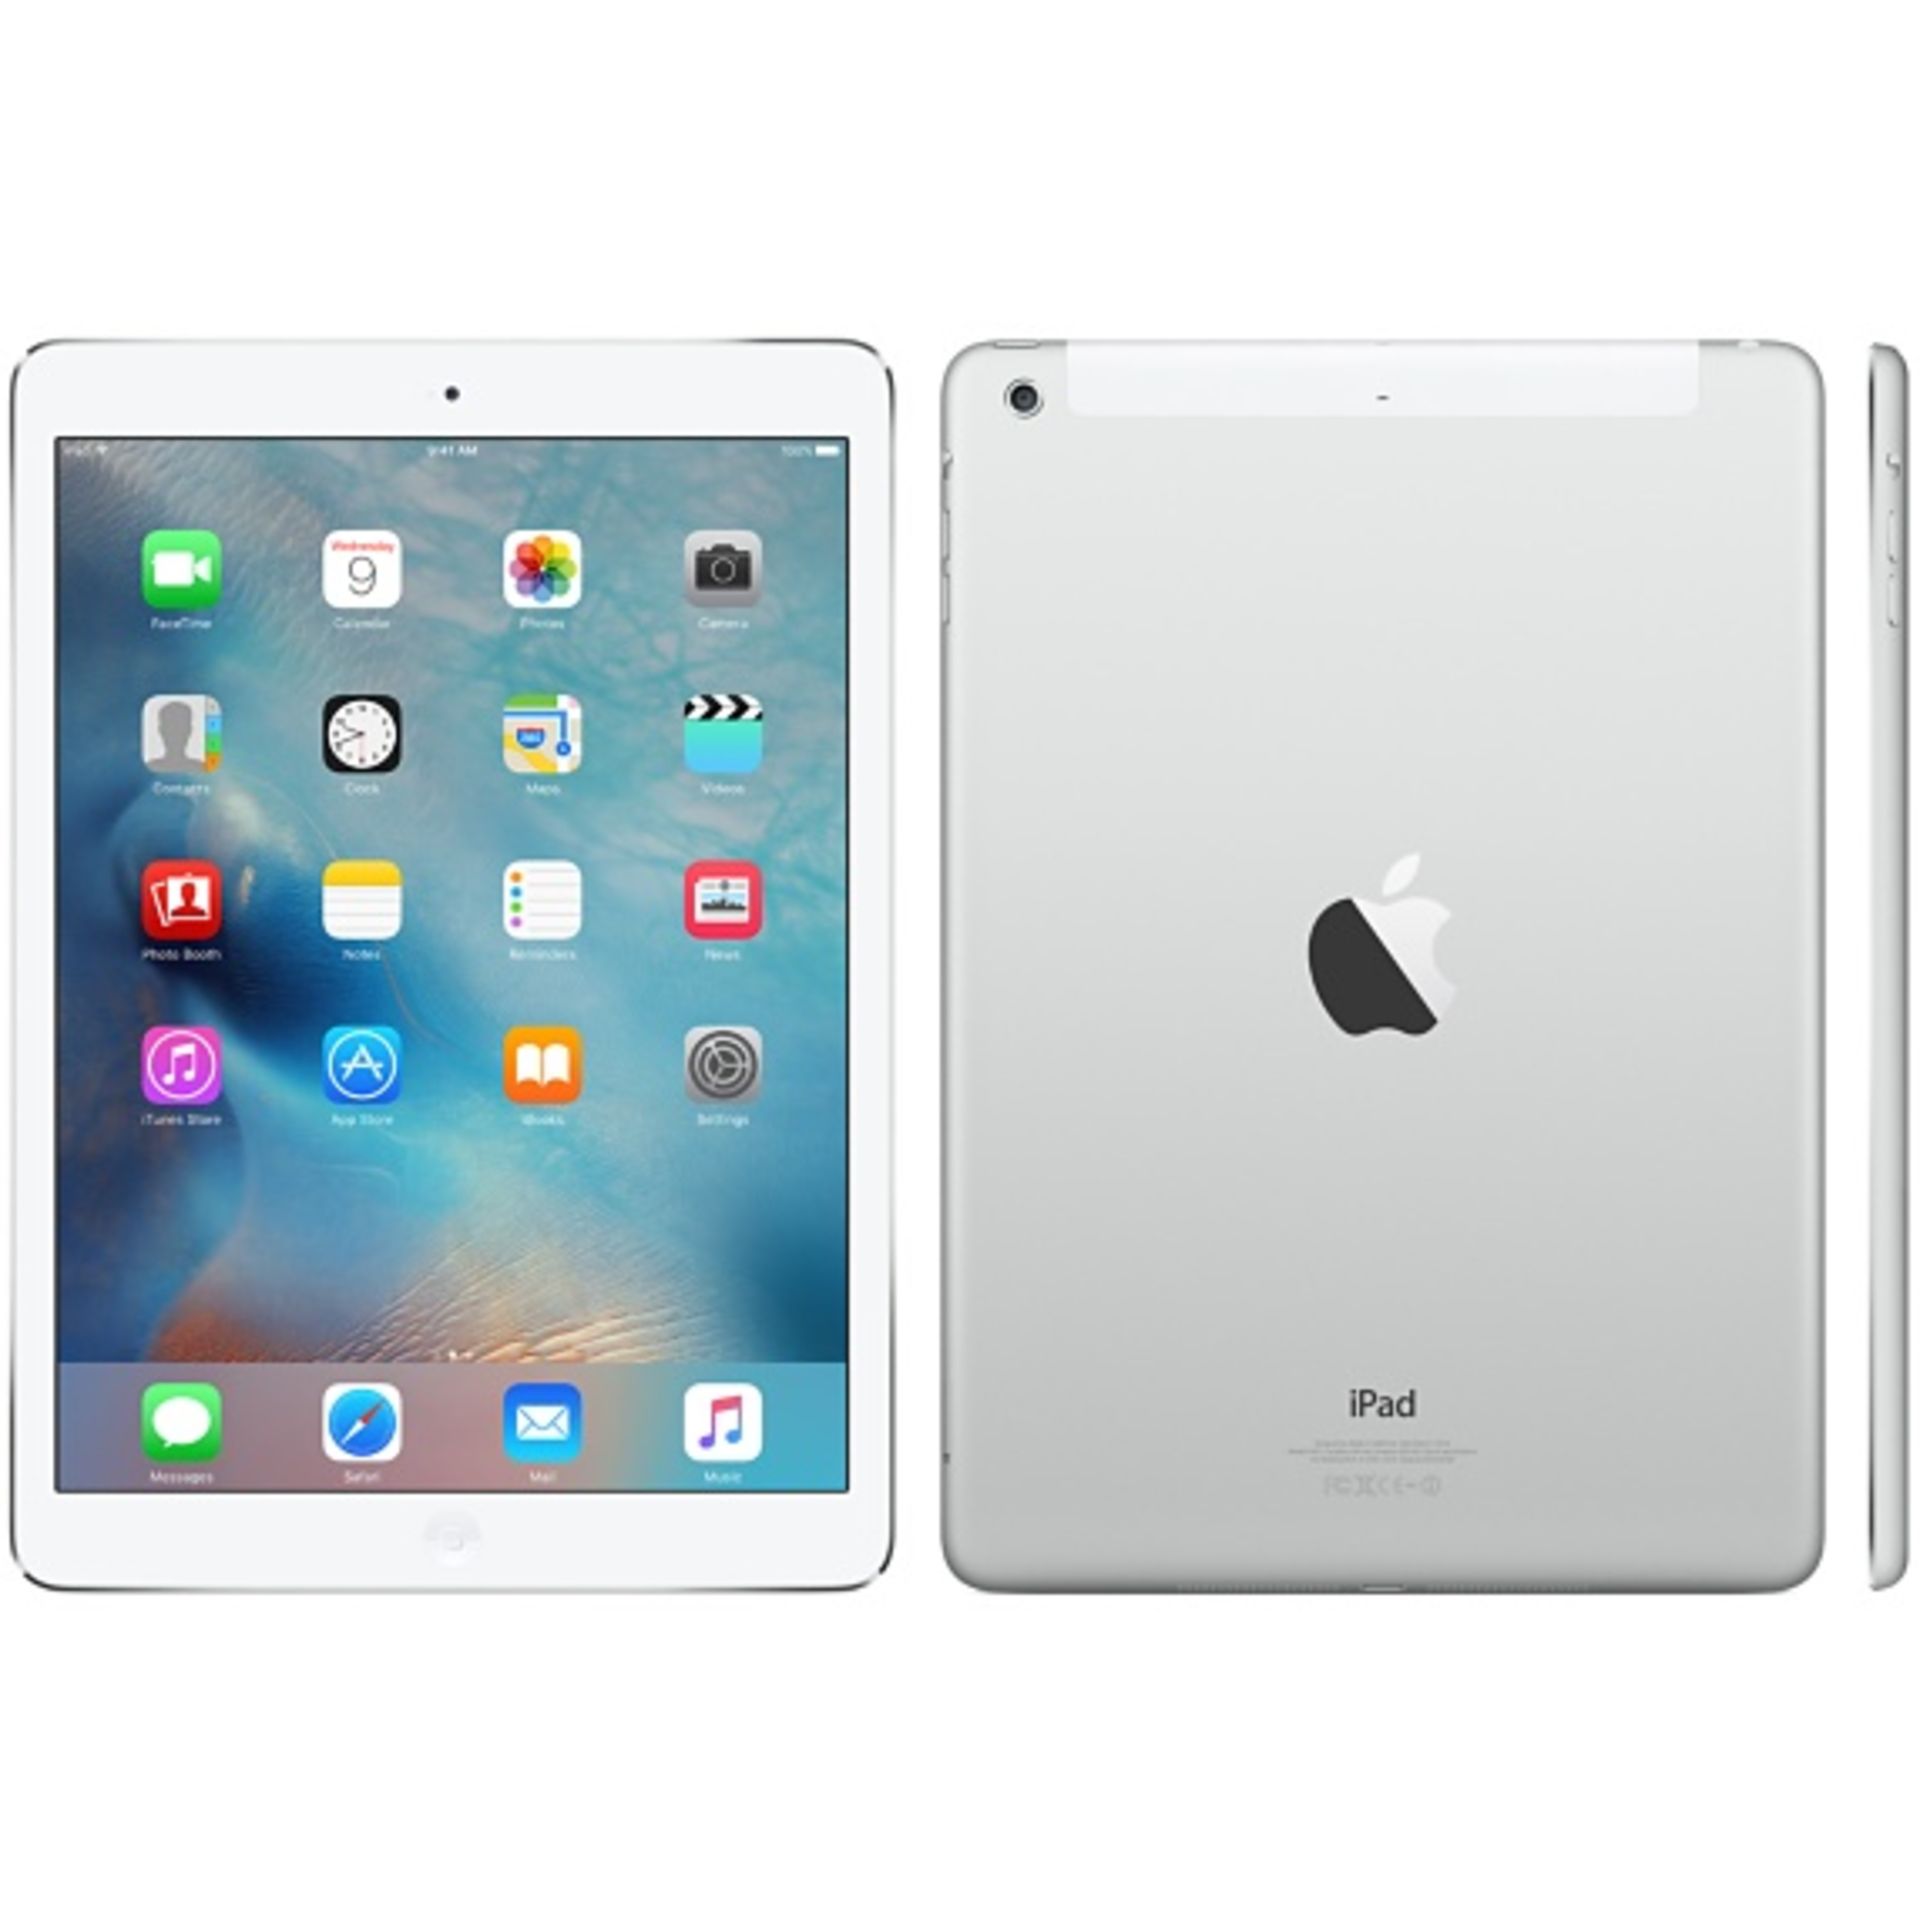 V Grade A/B Apple iPad Air 16GB with 4G and Wi-Fi - Silver/White - Generic Box